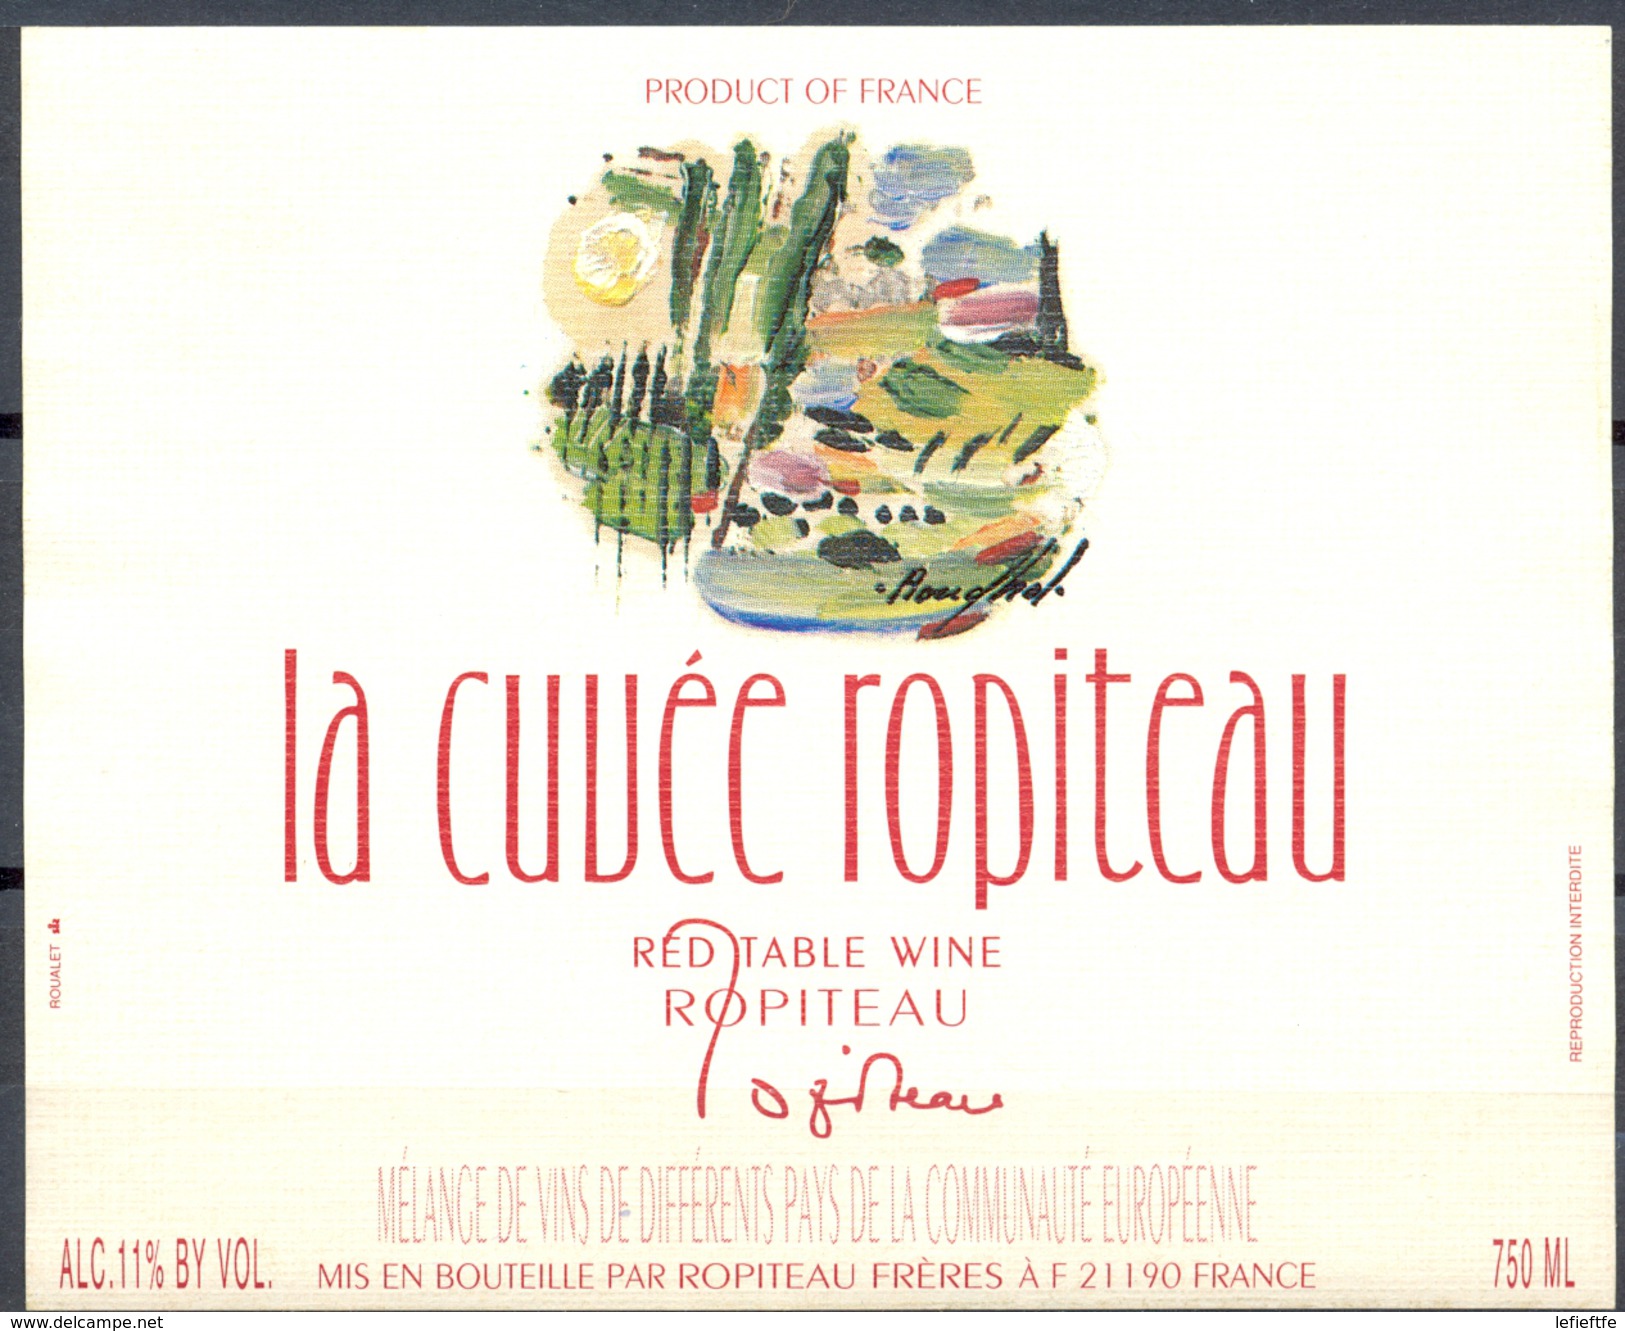 057 - La Cuvée Ropiteau  - Red Table Wine - Mélange De Différents Vins De La Communauté Europénne - Robiteau Frères - Vino Tinto